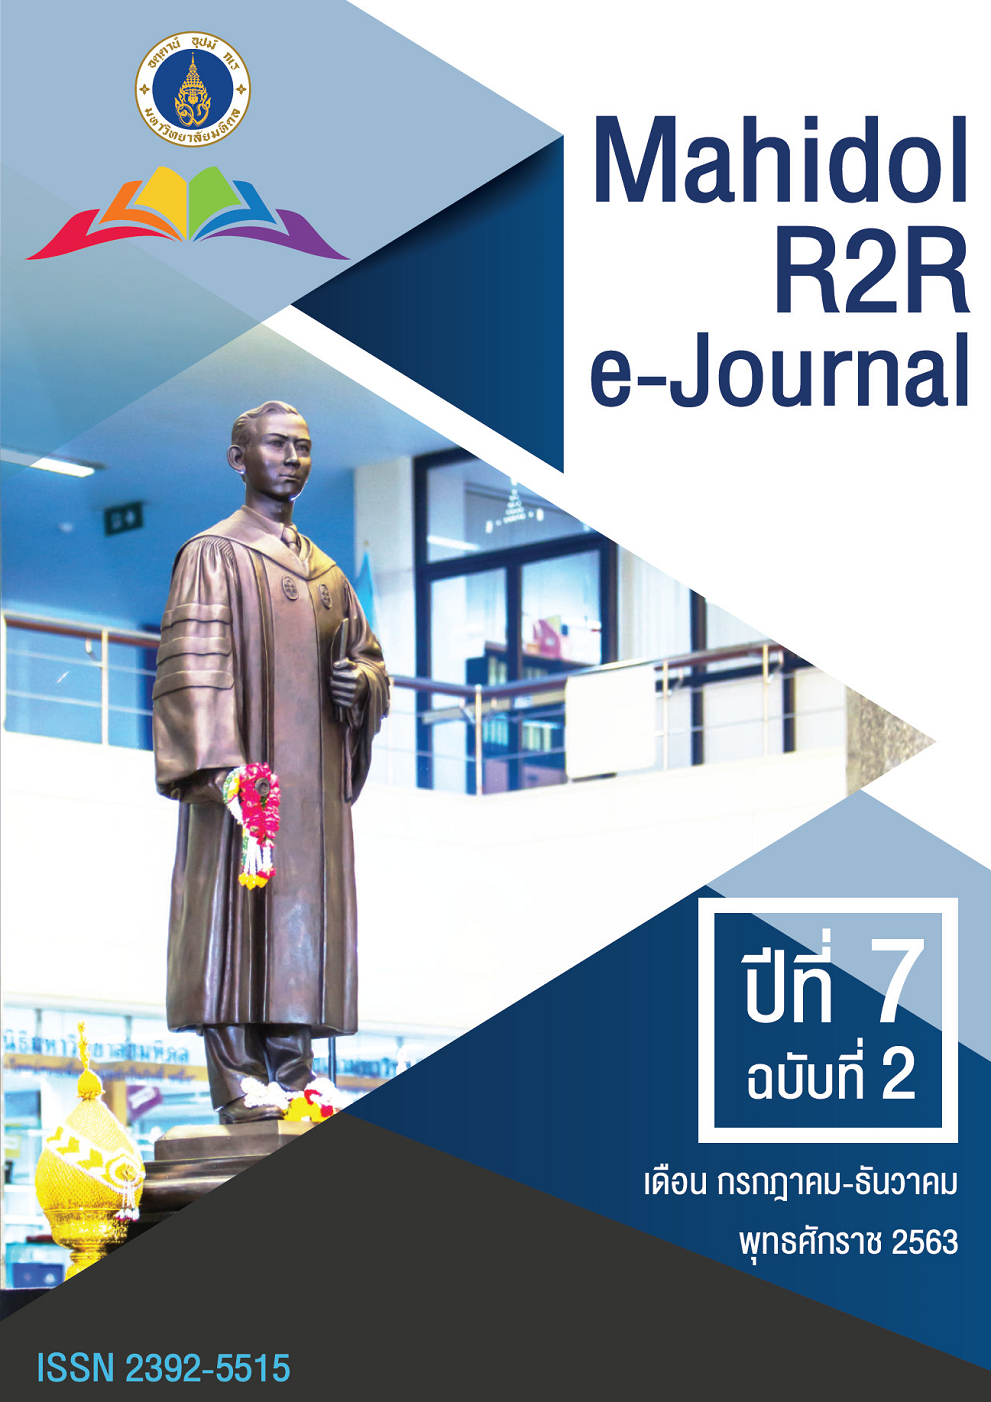 					ดู ปีที่ 7 ฉบับที่ 2 (2563): Mahidol R2R e-Journal
				